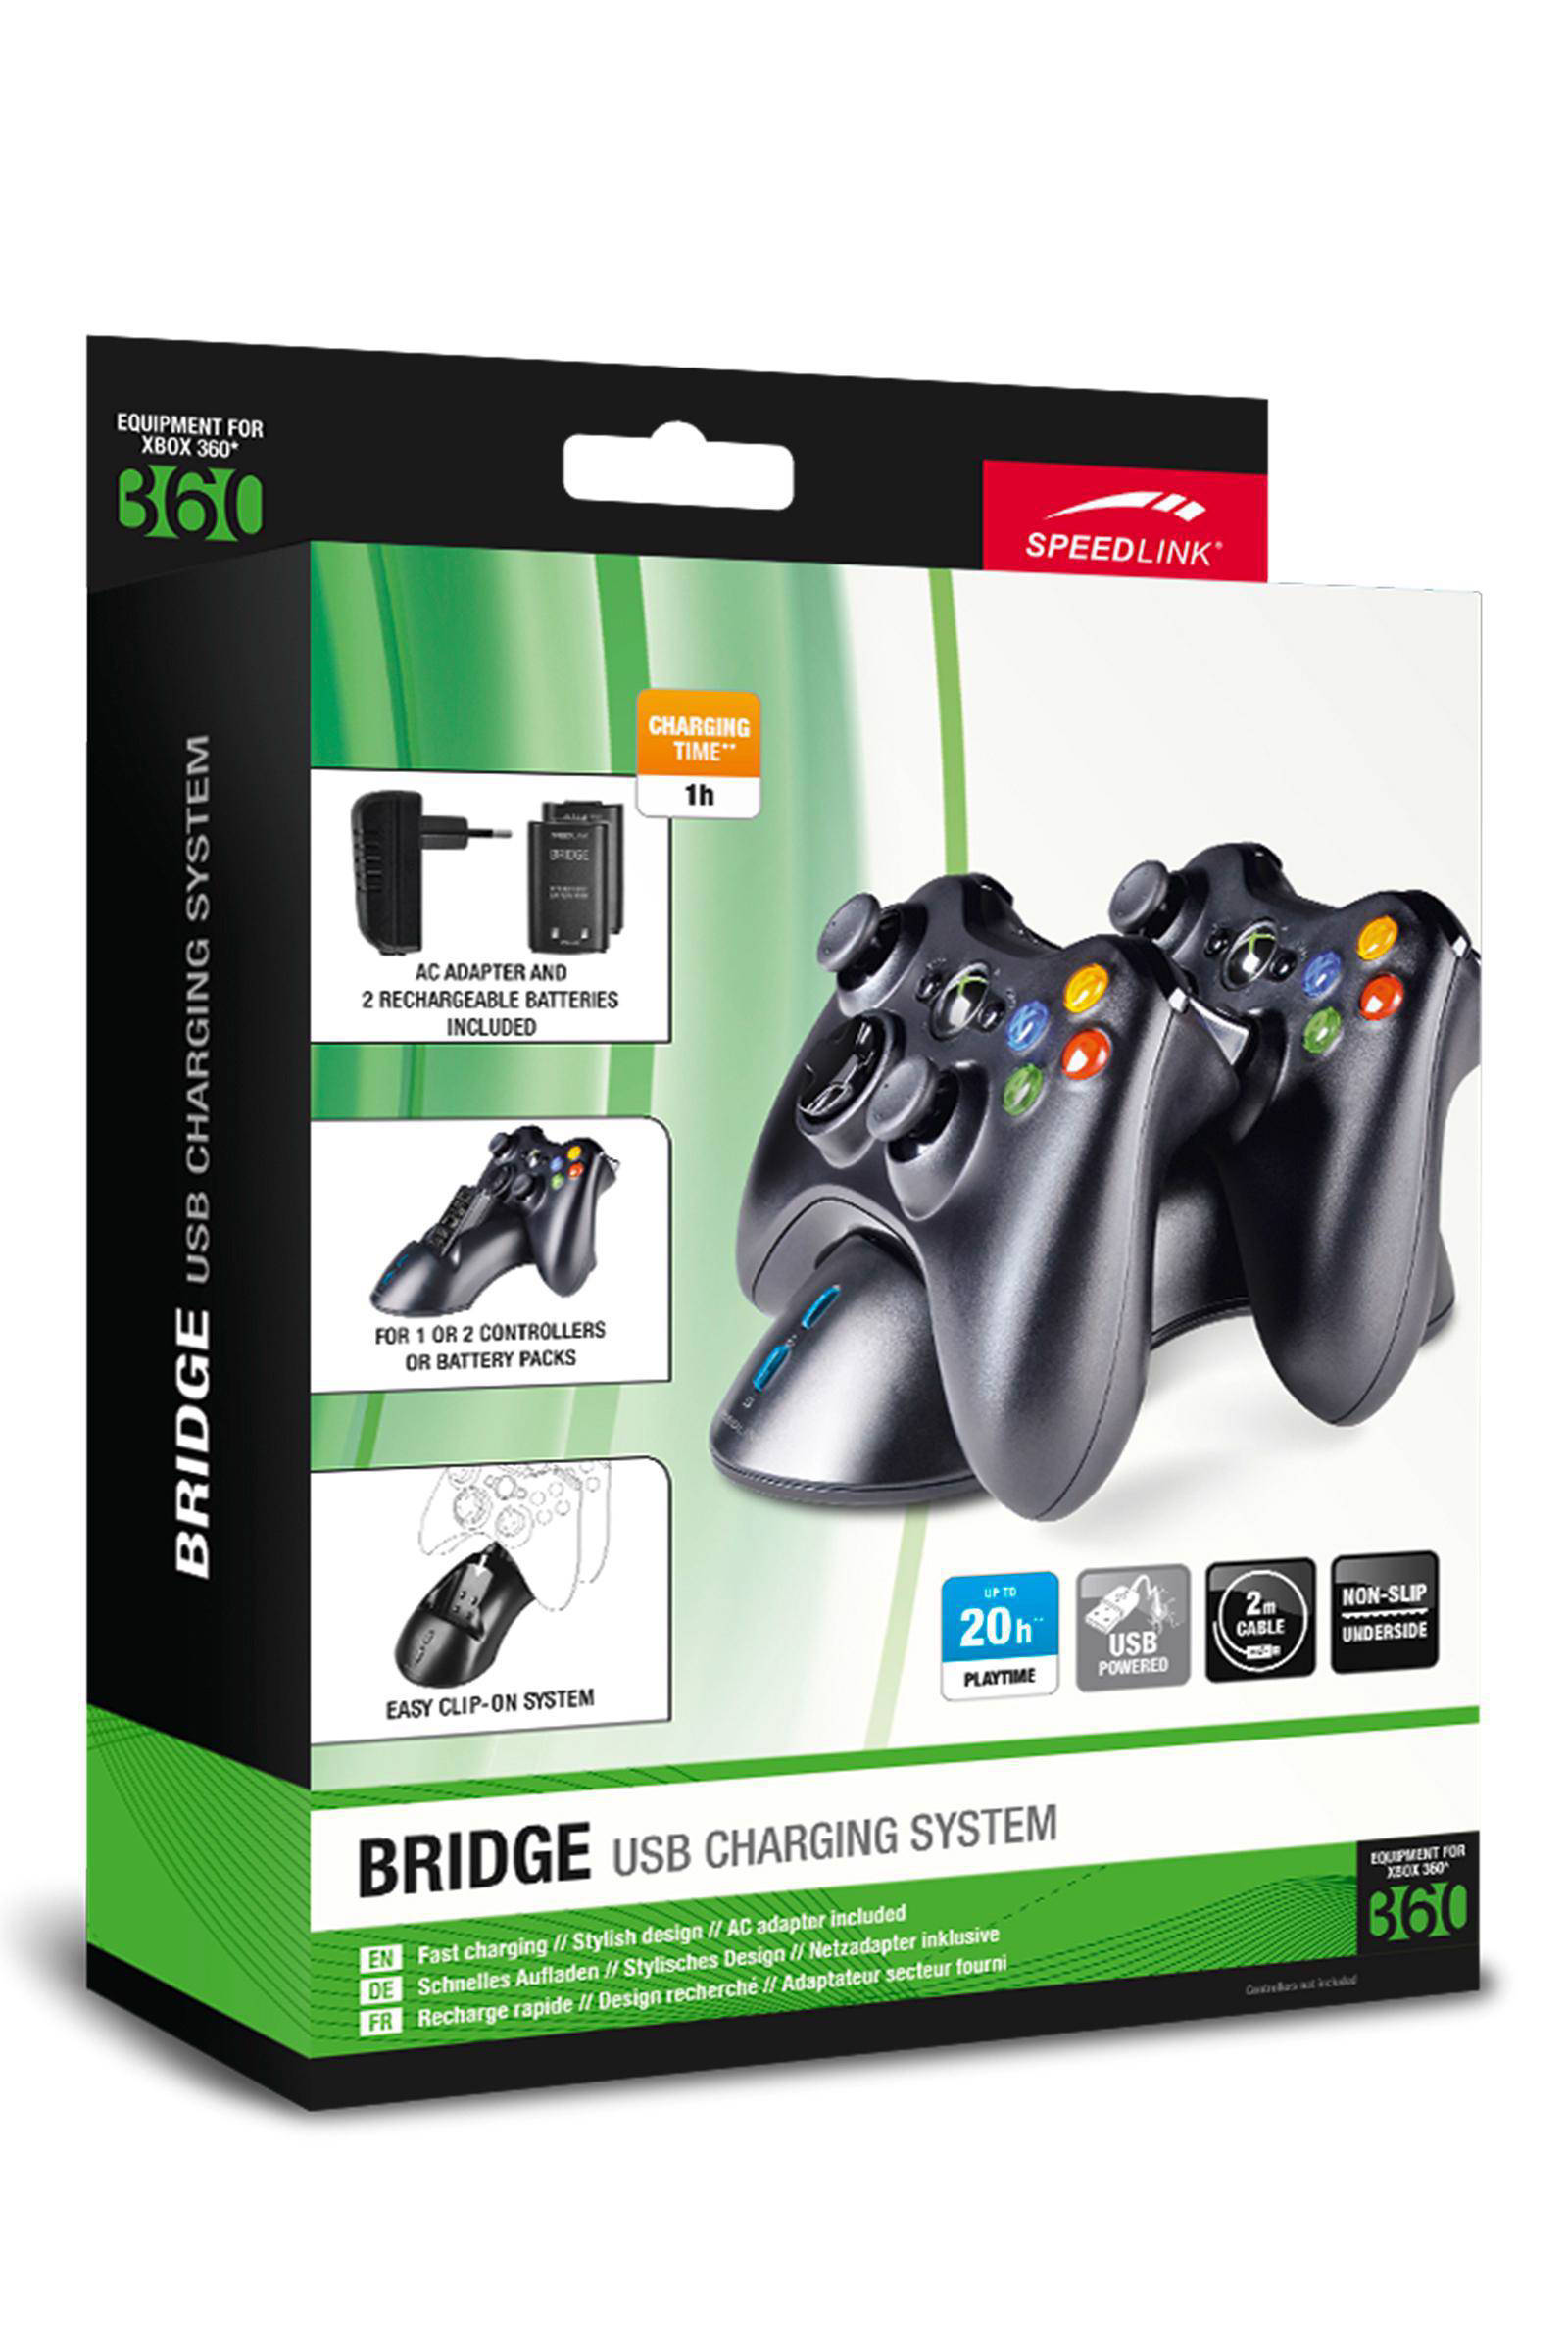 Xbox 360 SpeedLink Bridge USB Charging System - Xbox 360 Kiegészítők